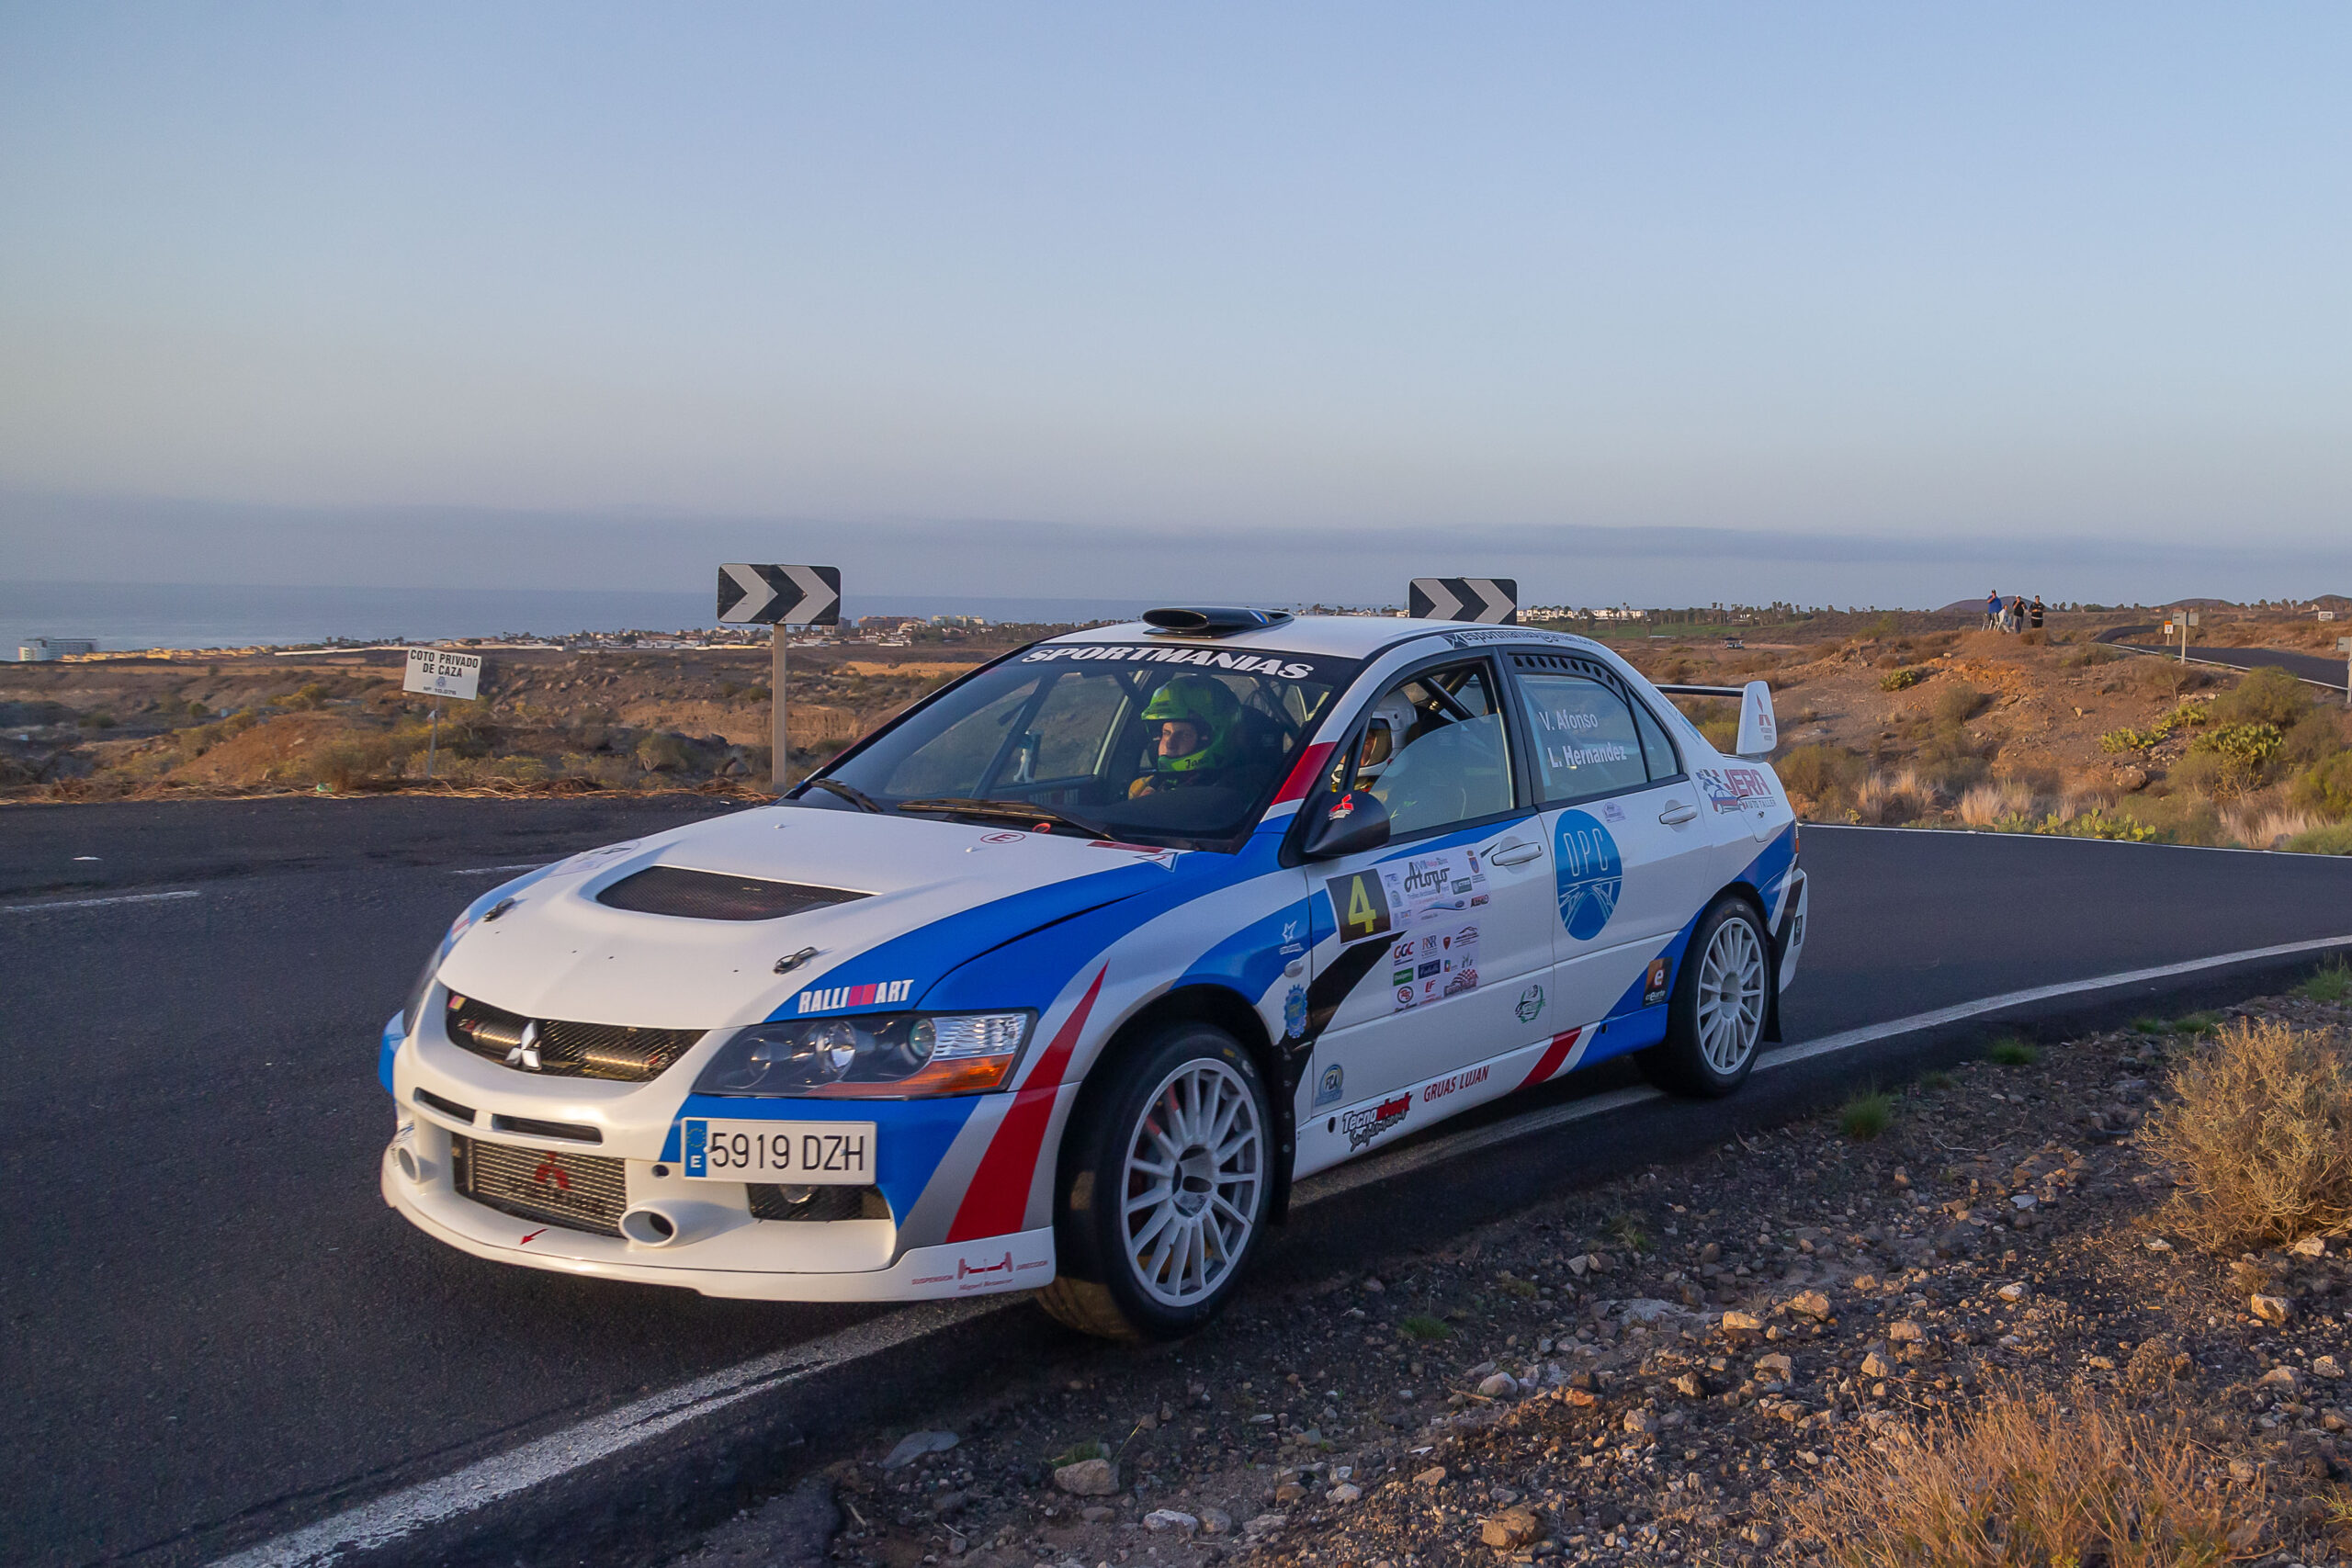 El Campeonato De Canarias De Rallysprint Visita Fuerteventura Este Fin De Semana